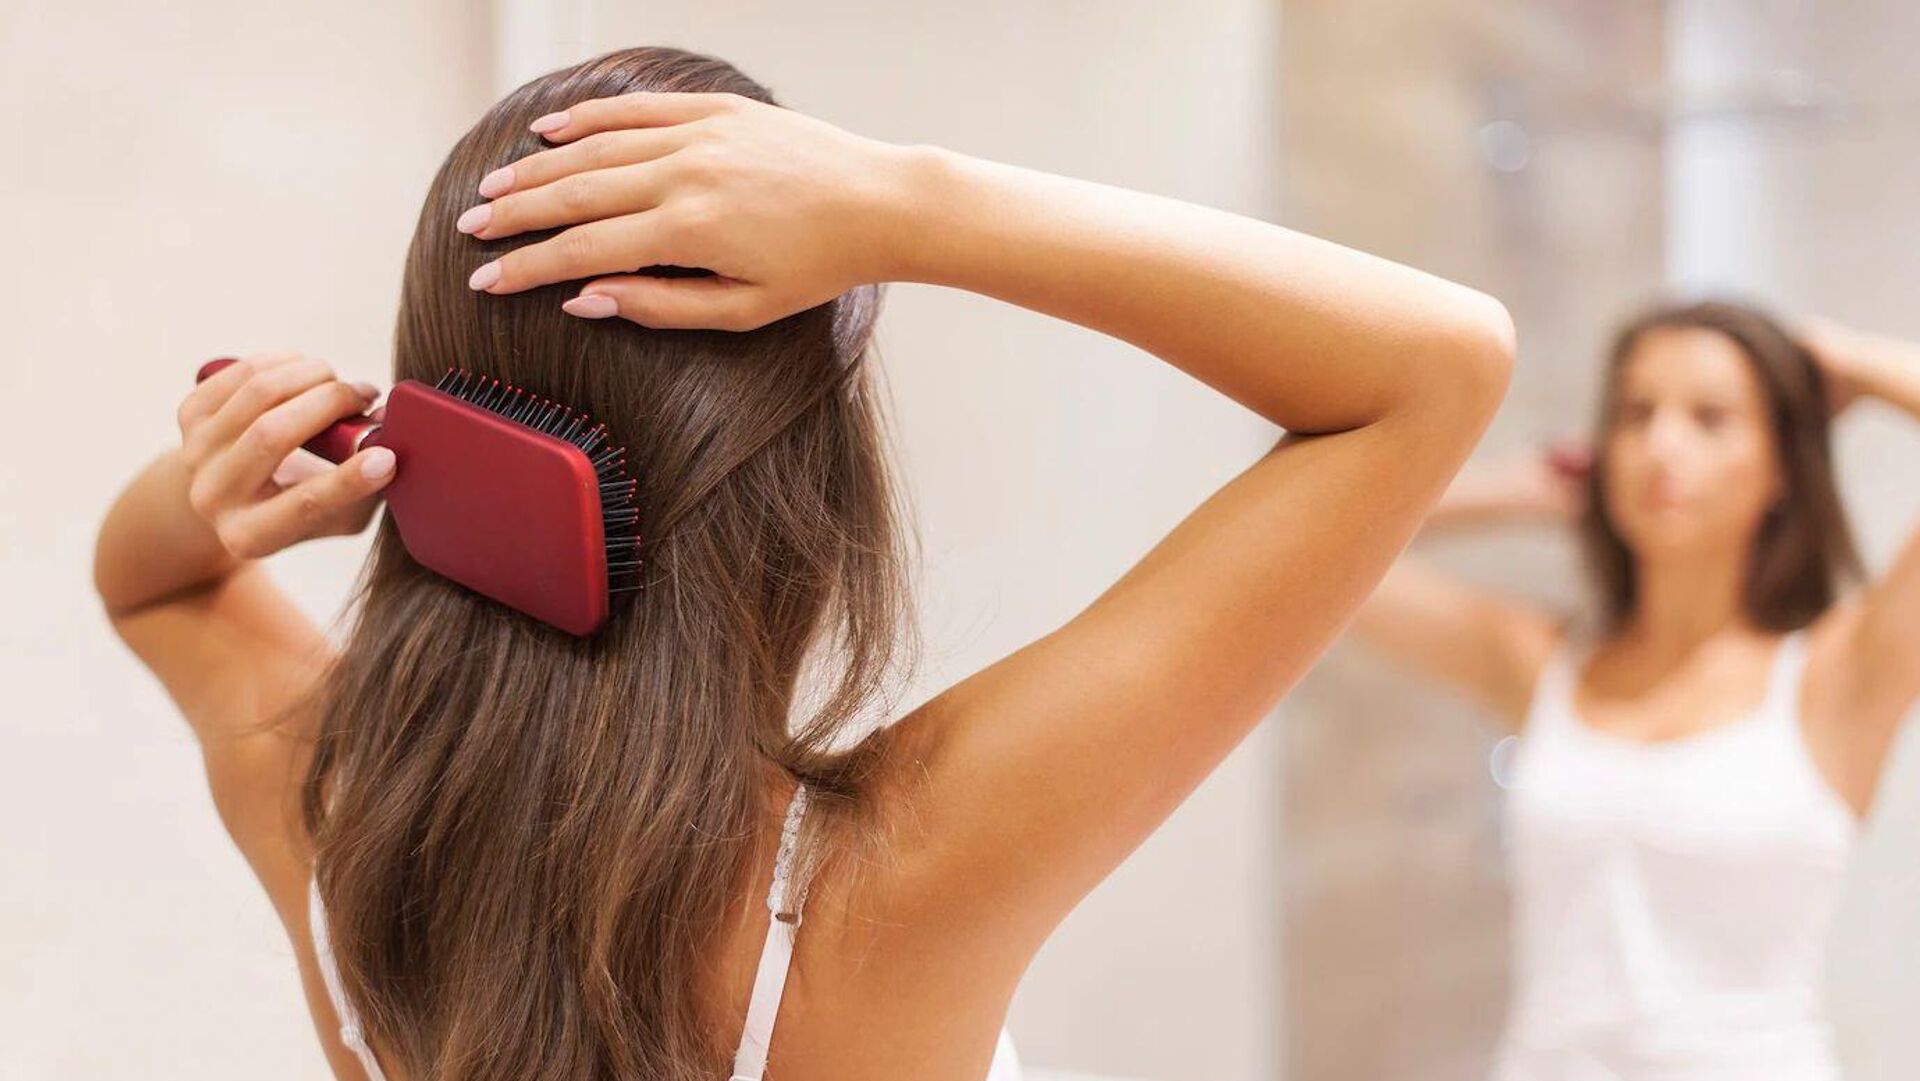 Трихолог рассказала, к чему могут привести некачественные шампуни для волос